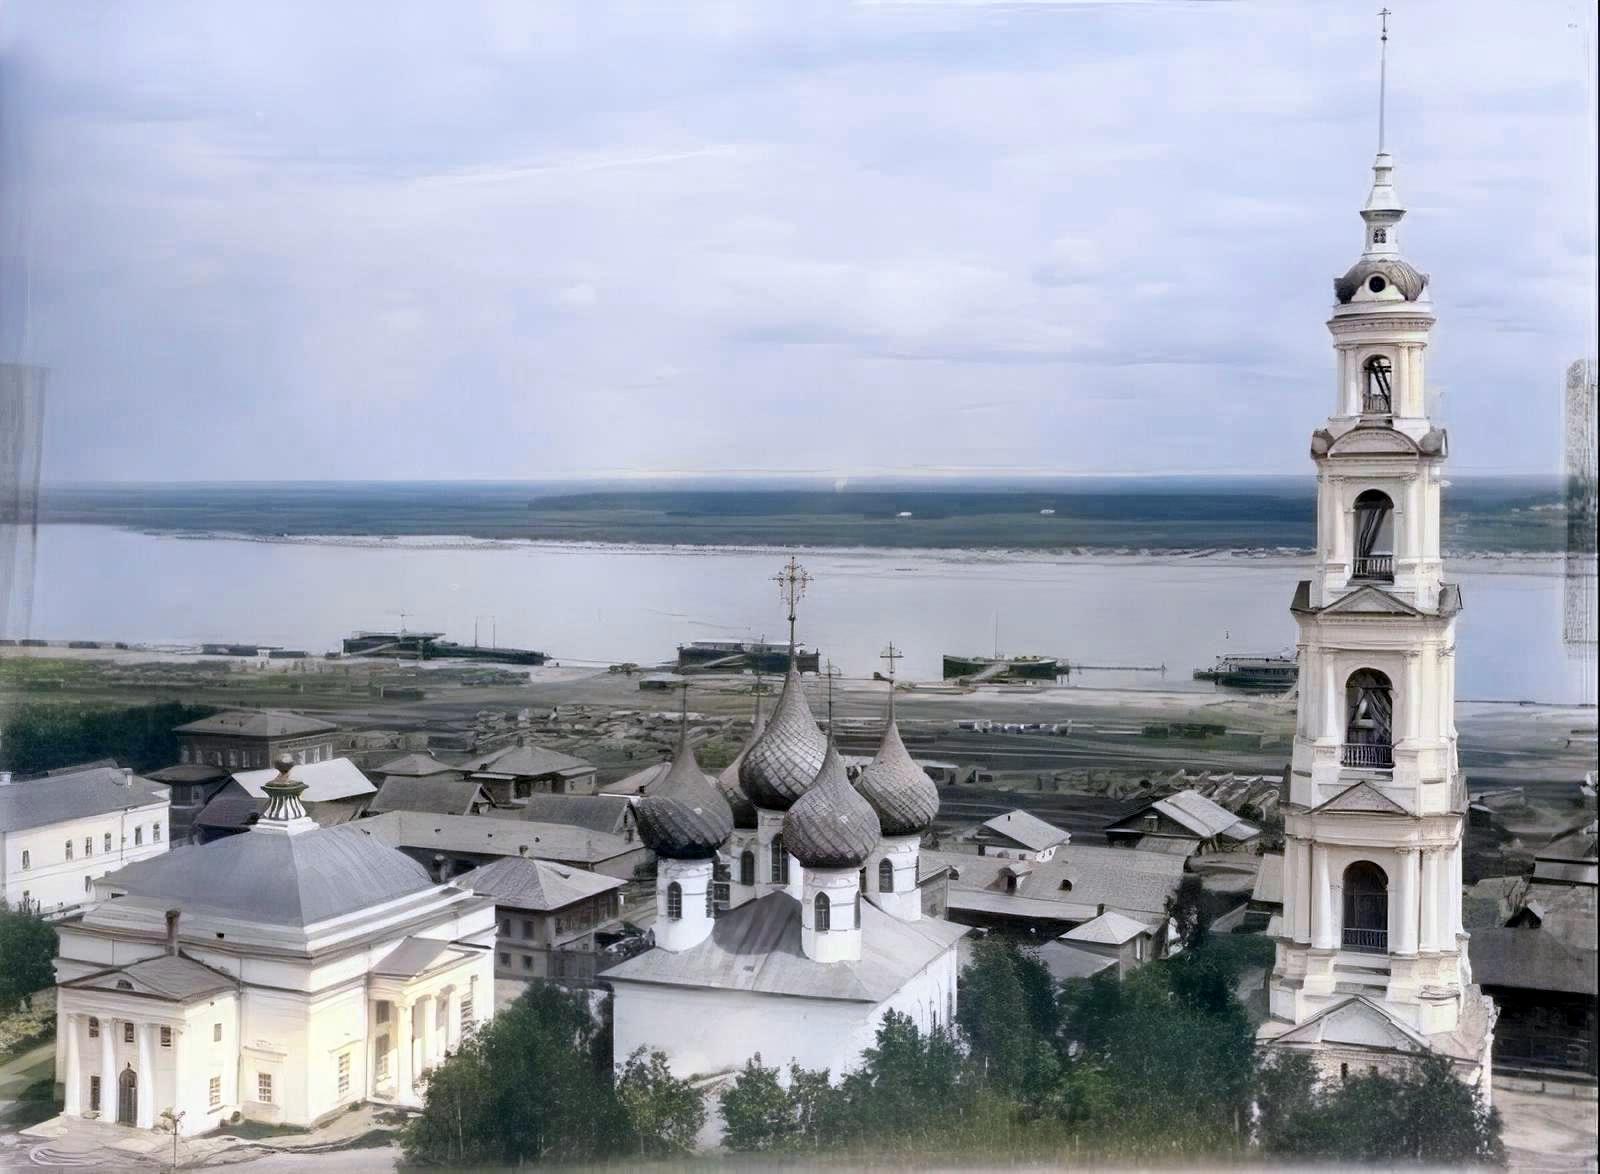 Юрьевец, Волга, 1901 год, пейзаж, колокольня, архитектура